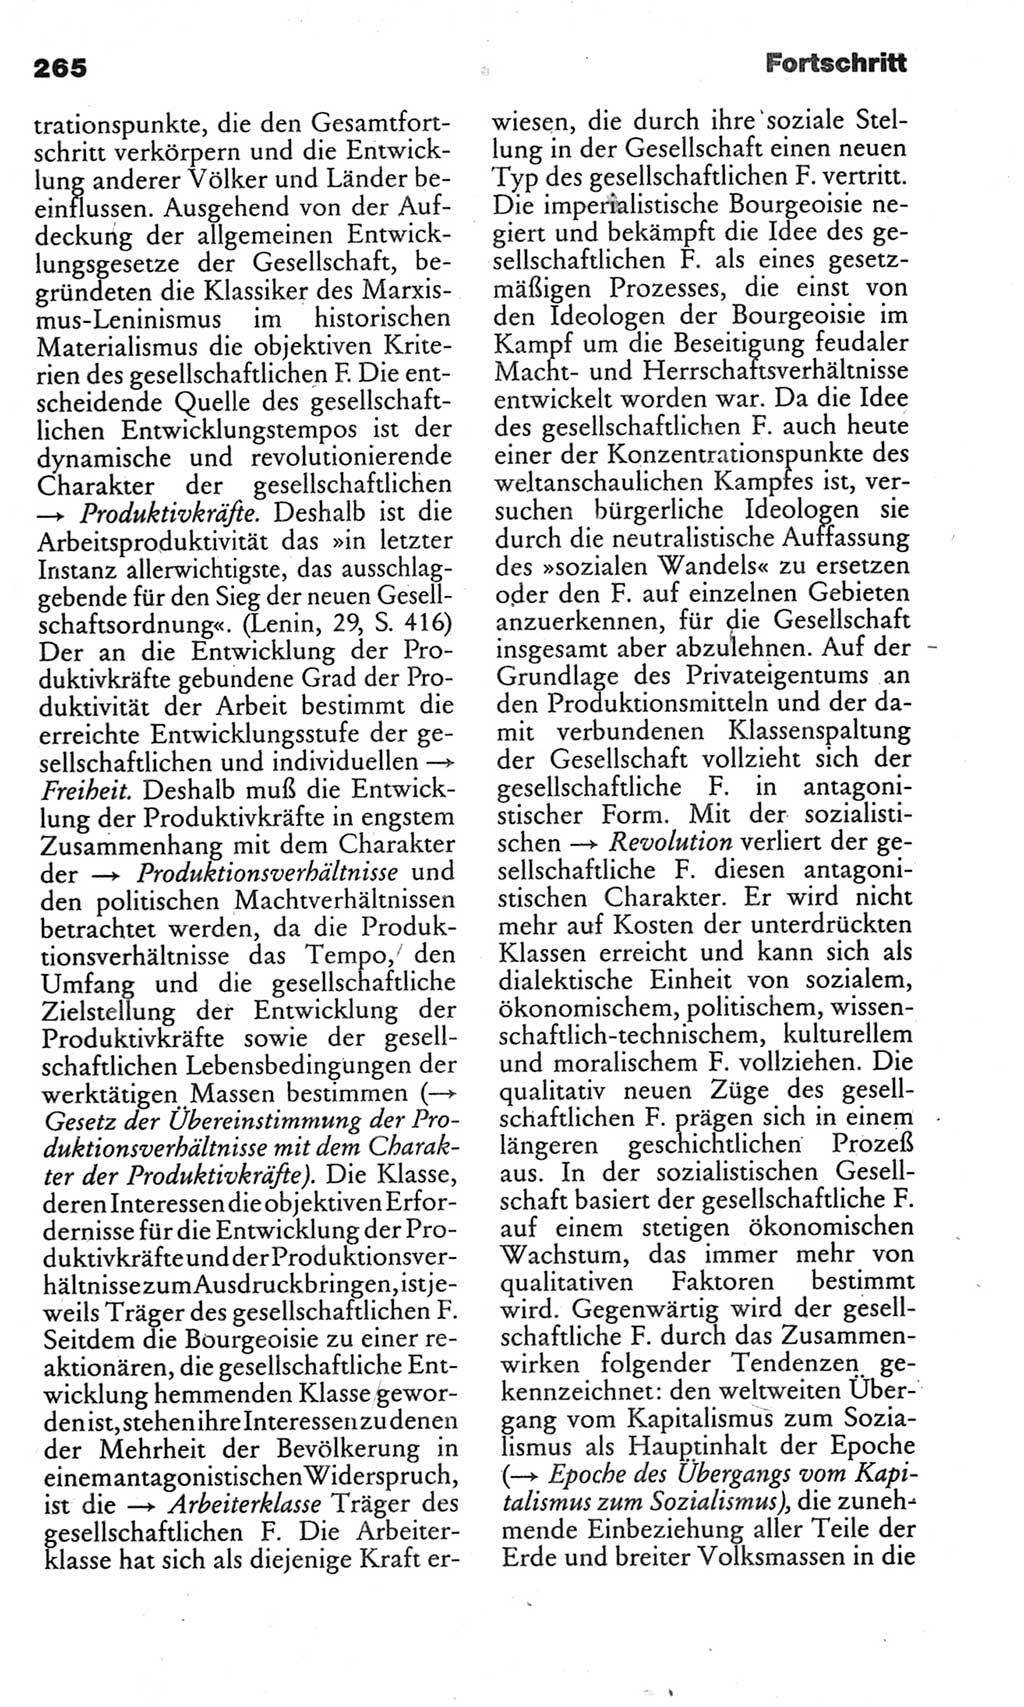 Kleines politisches Wörterbuch [Deutsche Demokratische Republik (DDR)] 1983, Seite 265 (Kl. pol. Wb. DDR 1983, S. 265)